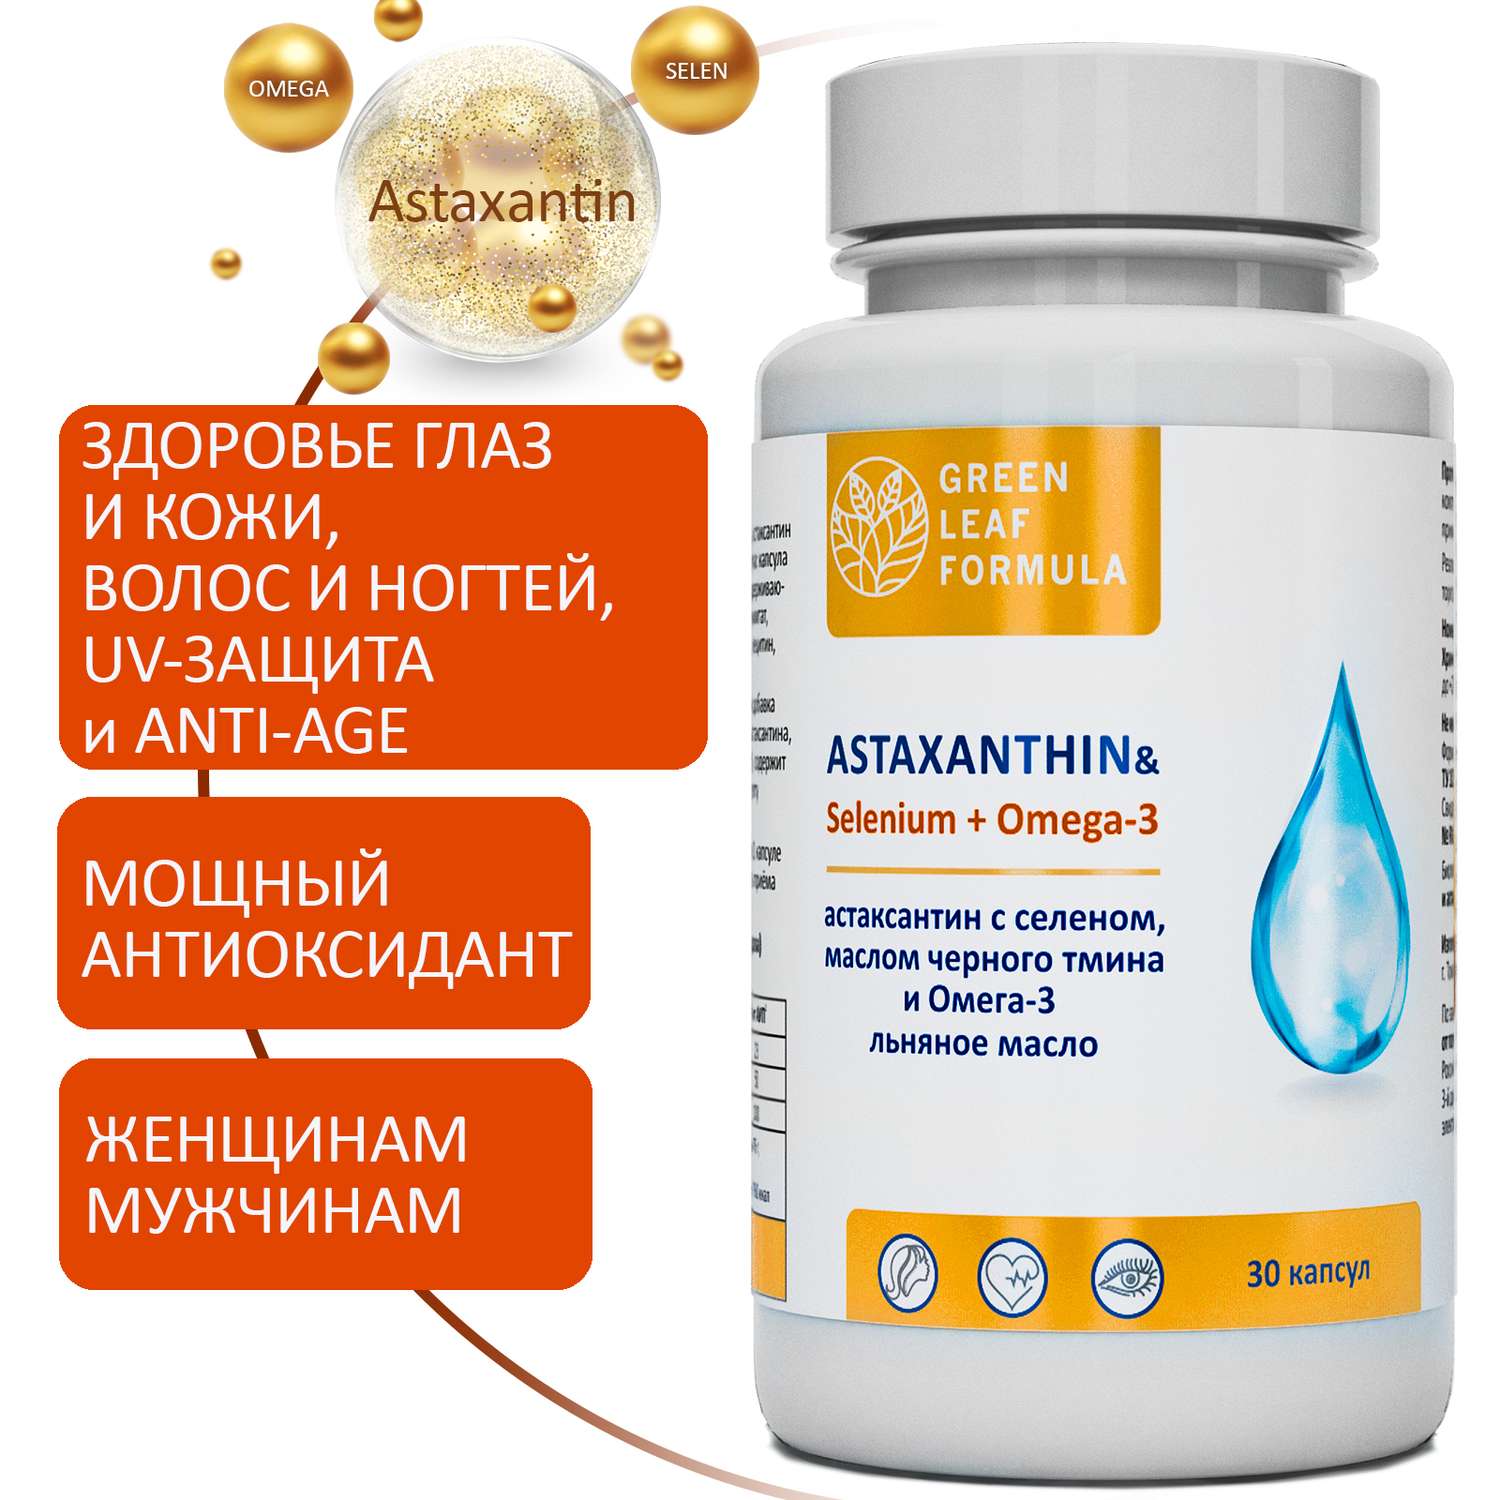 Астаксантин антиоксиданты Green Leaf Formula витамины для глаз кожи волос и ногтей селен и омега 3-6-9 для сердца 2 банки - фото 2